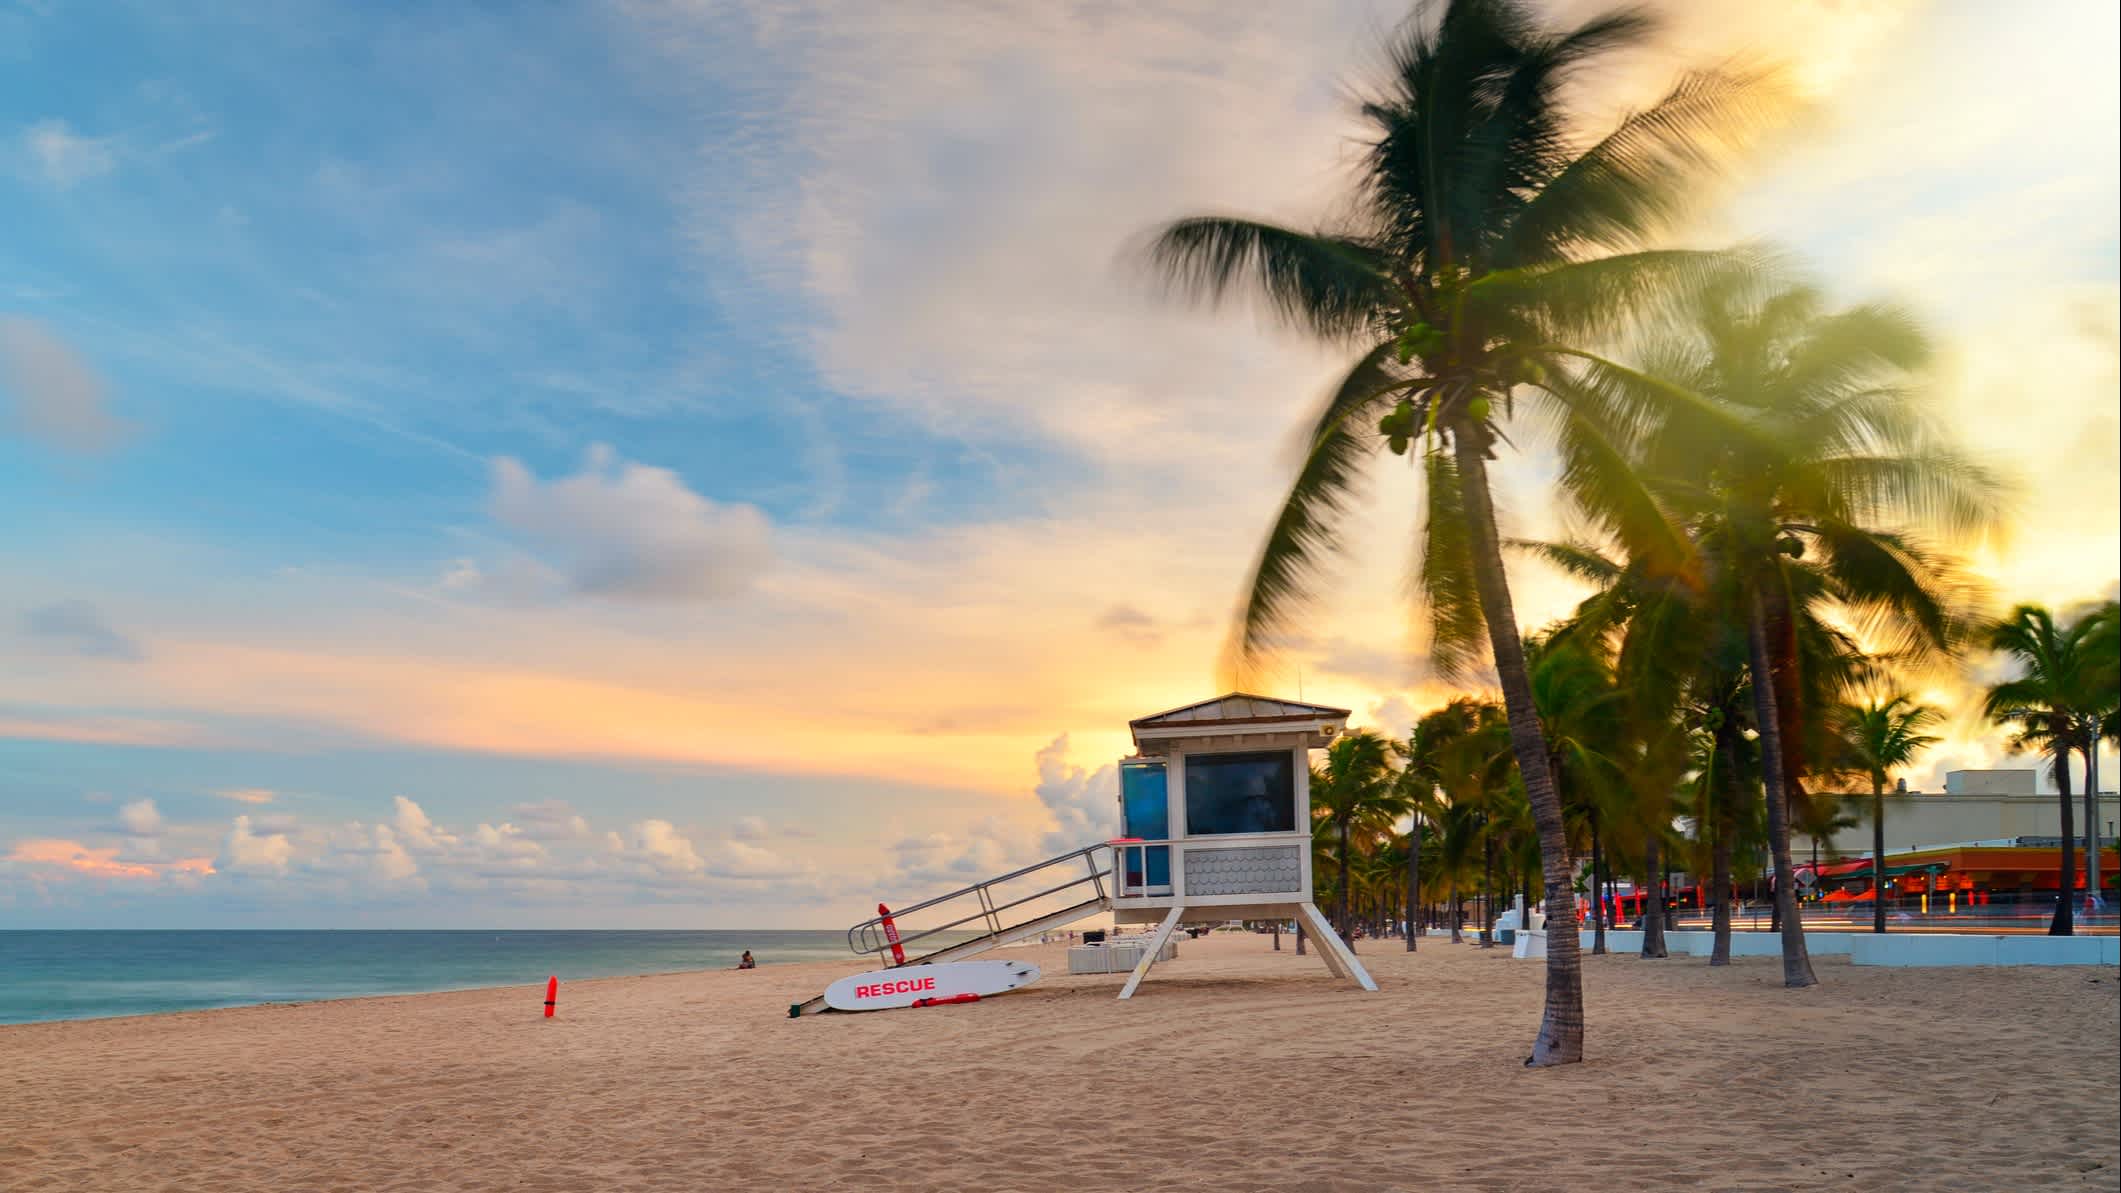 Sonnenuntergang am Sunrise Beach in Ft.Lauderdale mit Palmen und Strandeintritt.

